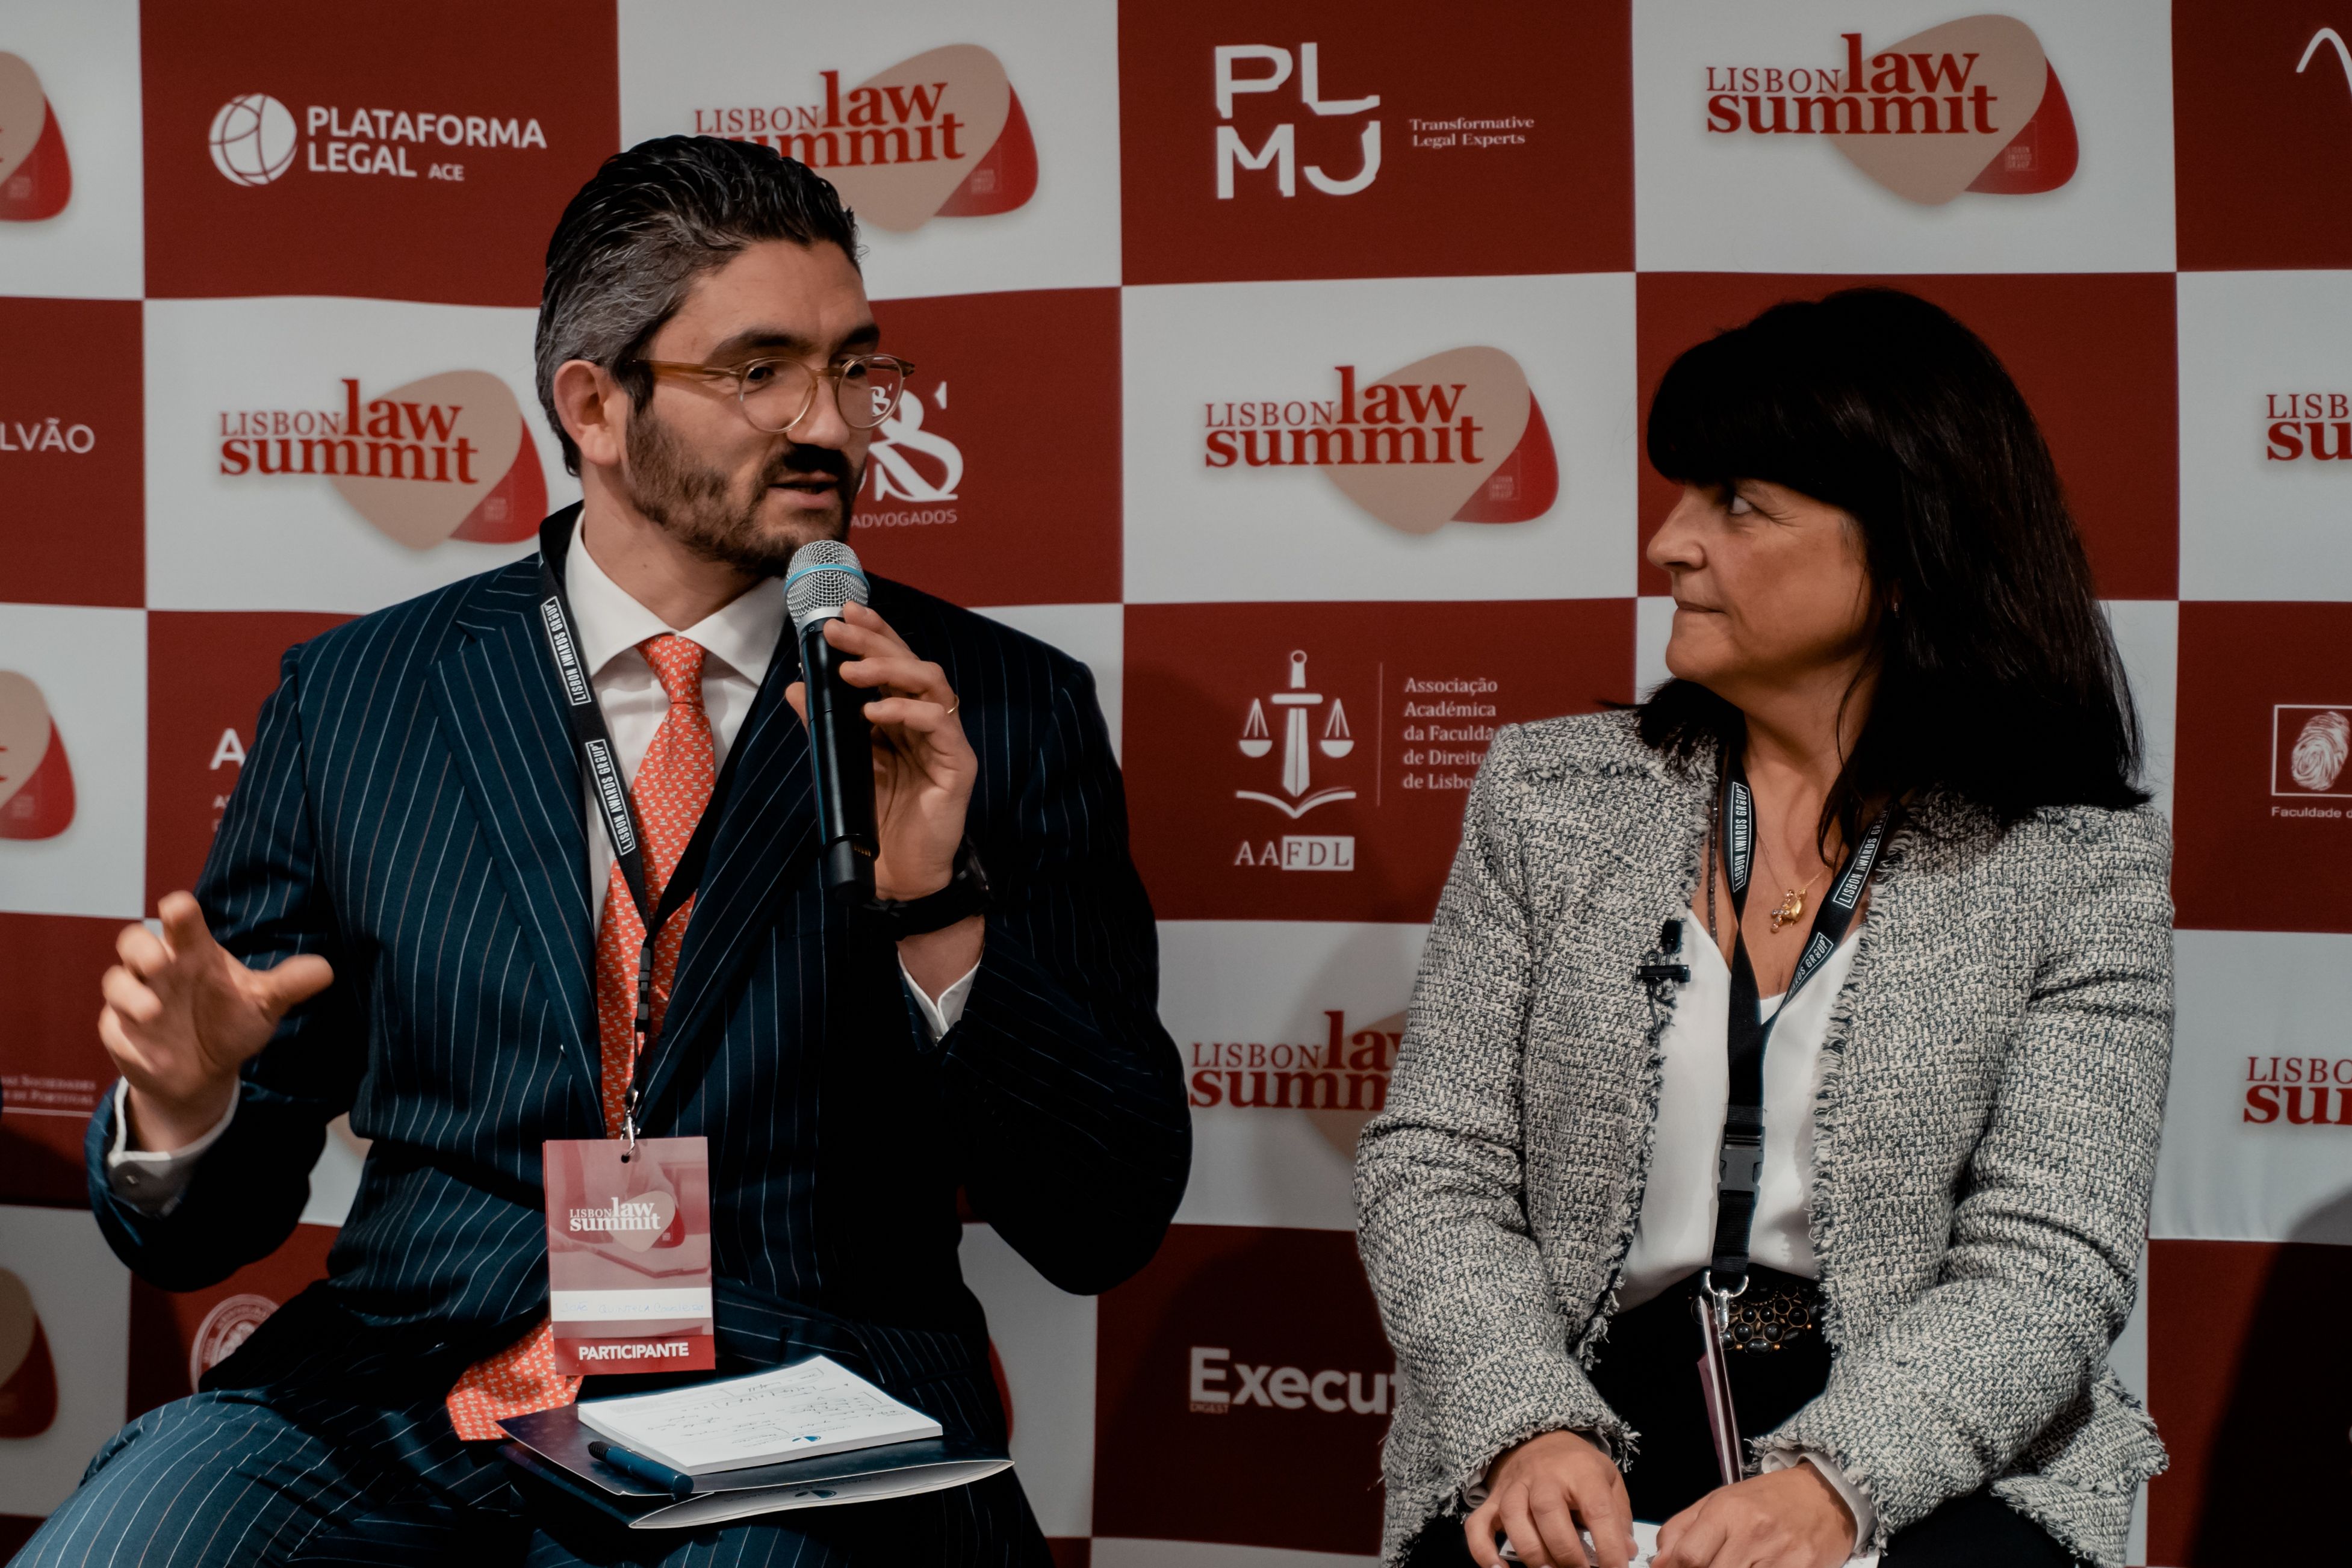 João Quintela Cavaleiro marcou presença, como orador,  no Lisbon Law Summit 2020